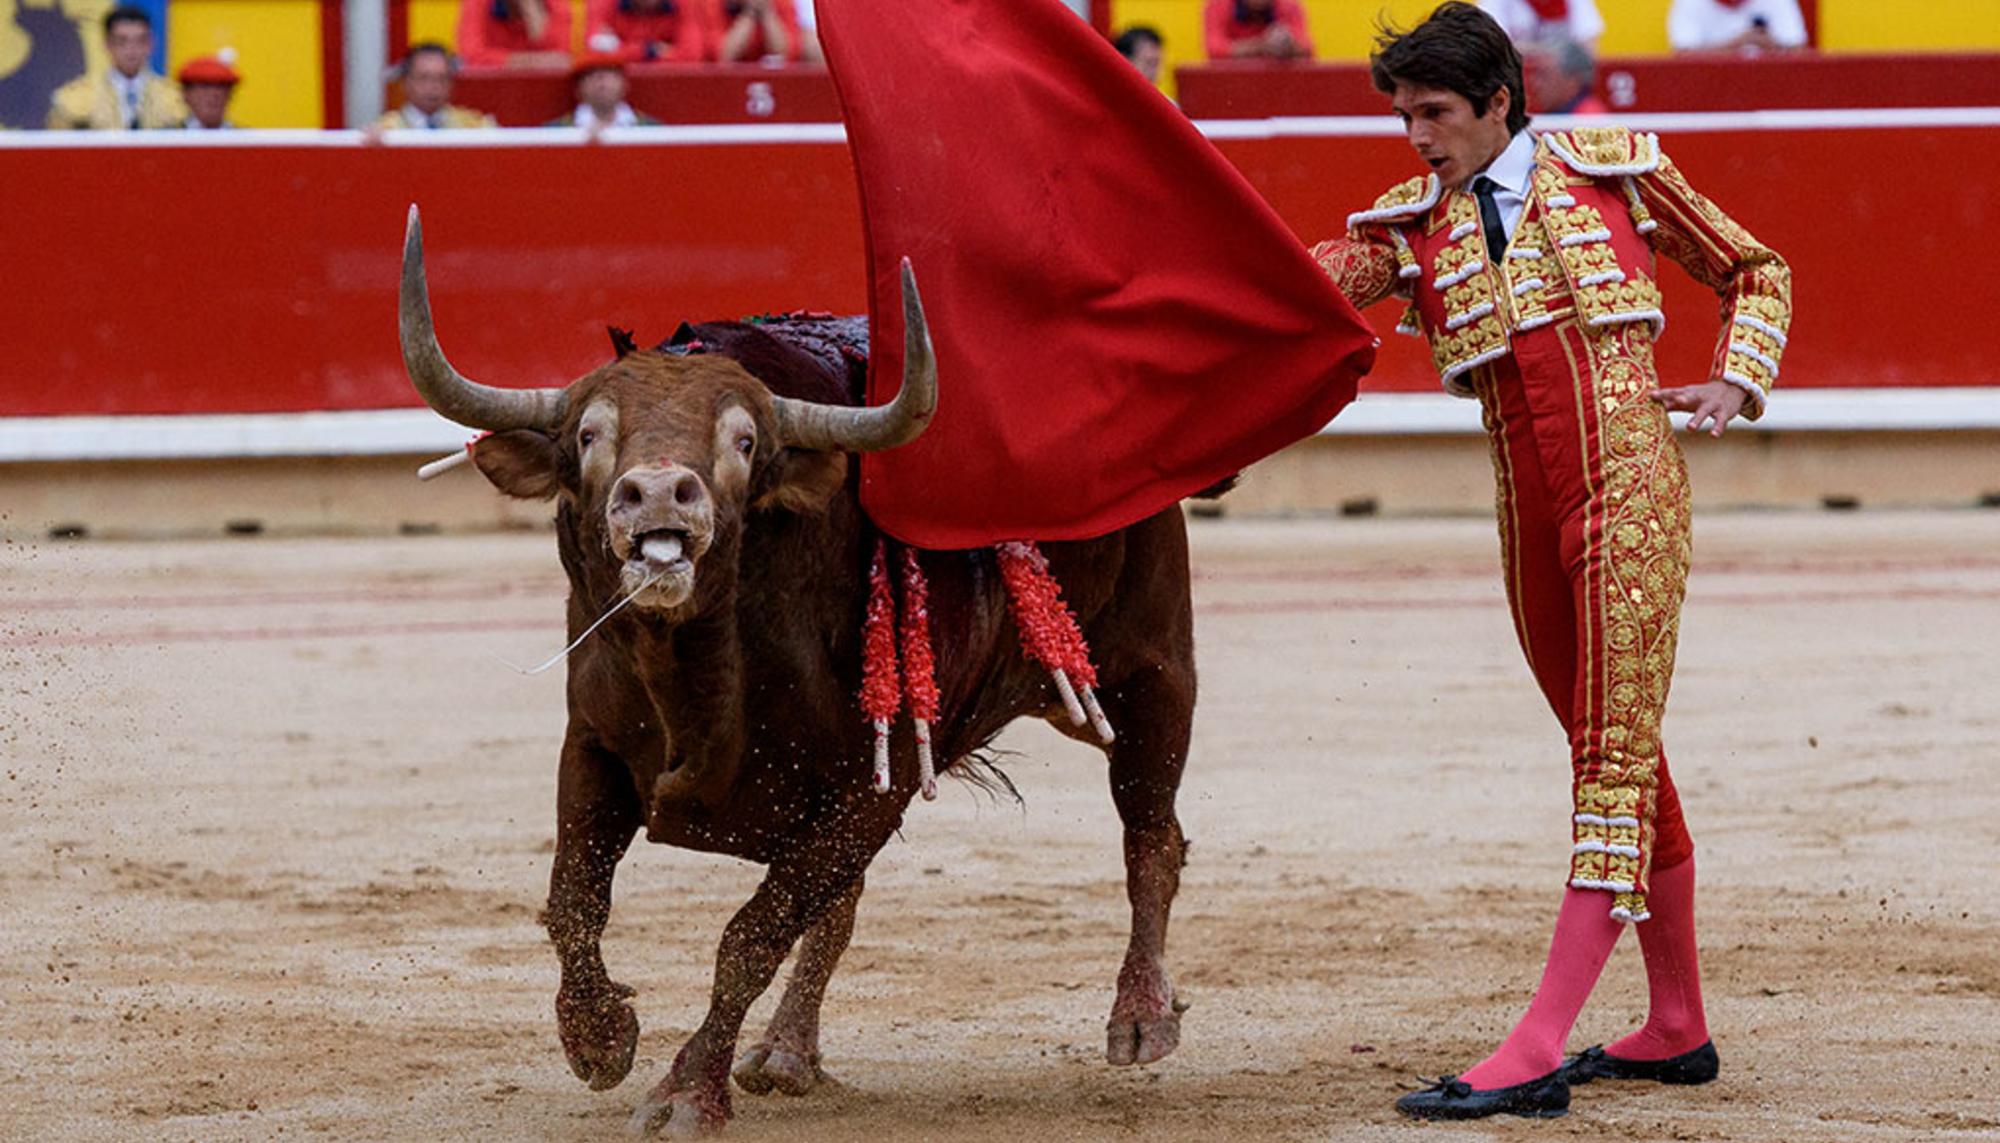 Toro herido perdiendo sangre mientras es toreado en la plaza de toros de Iruña